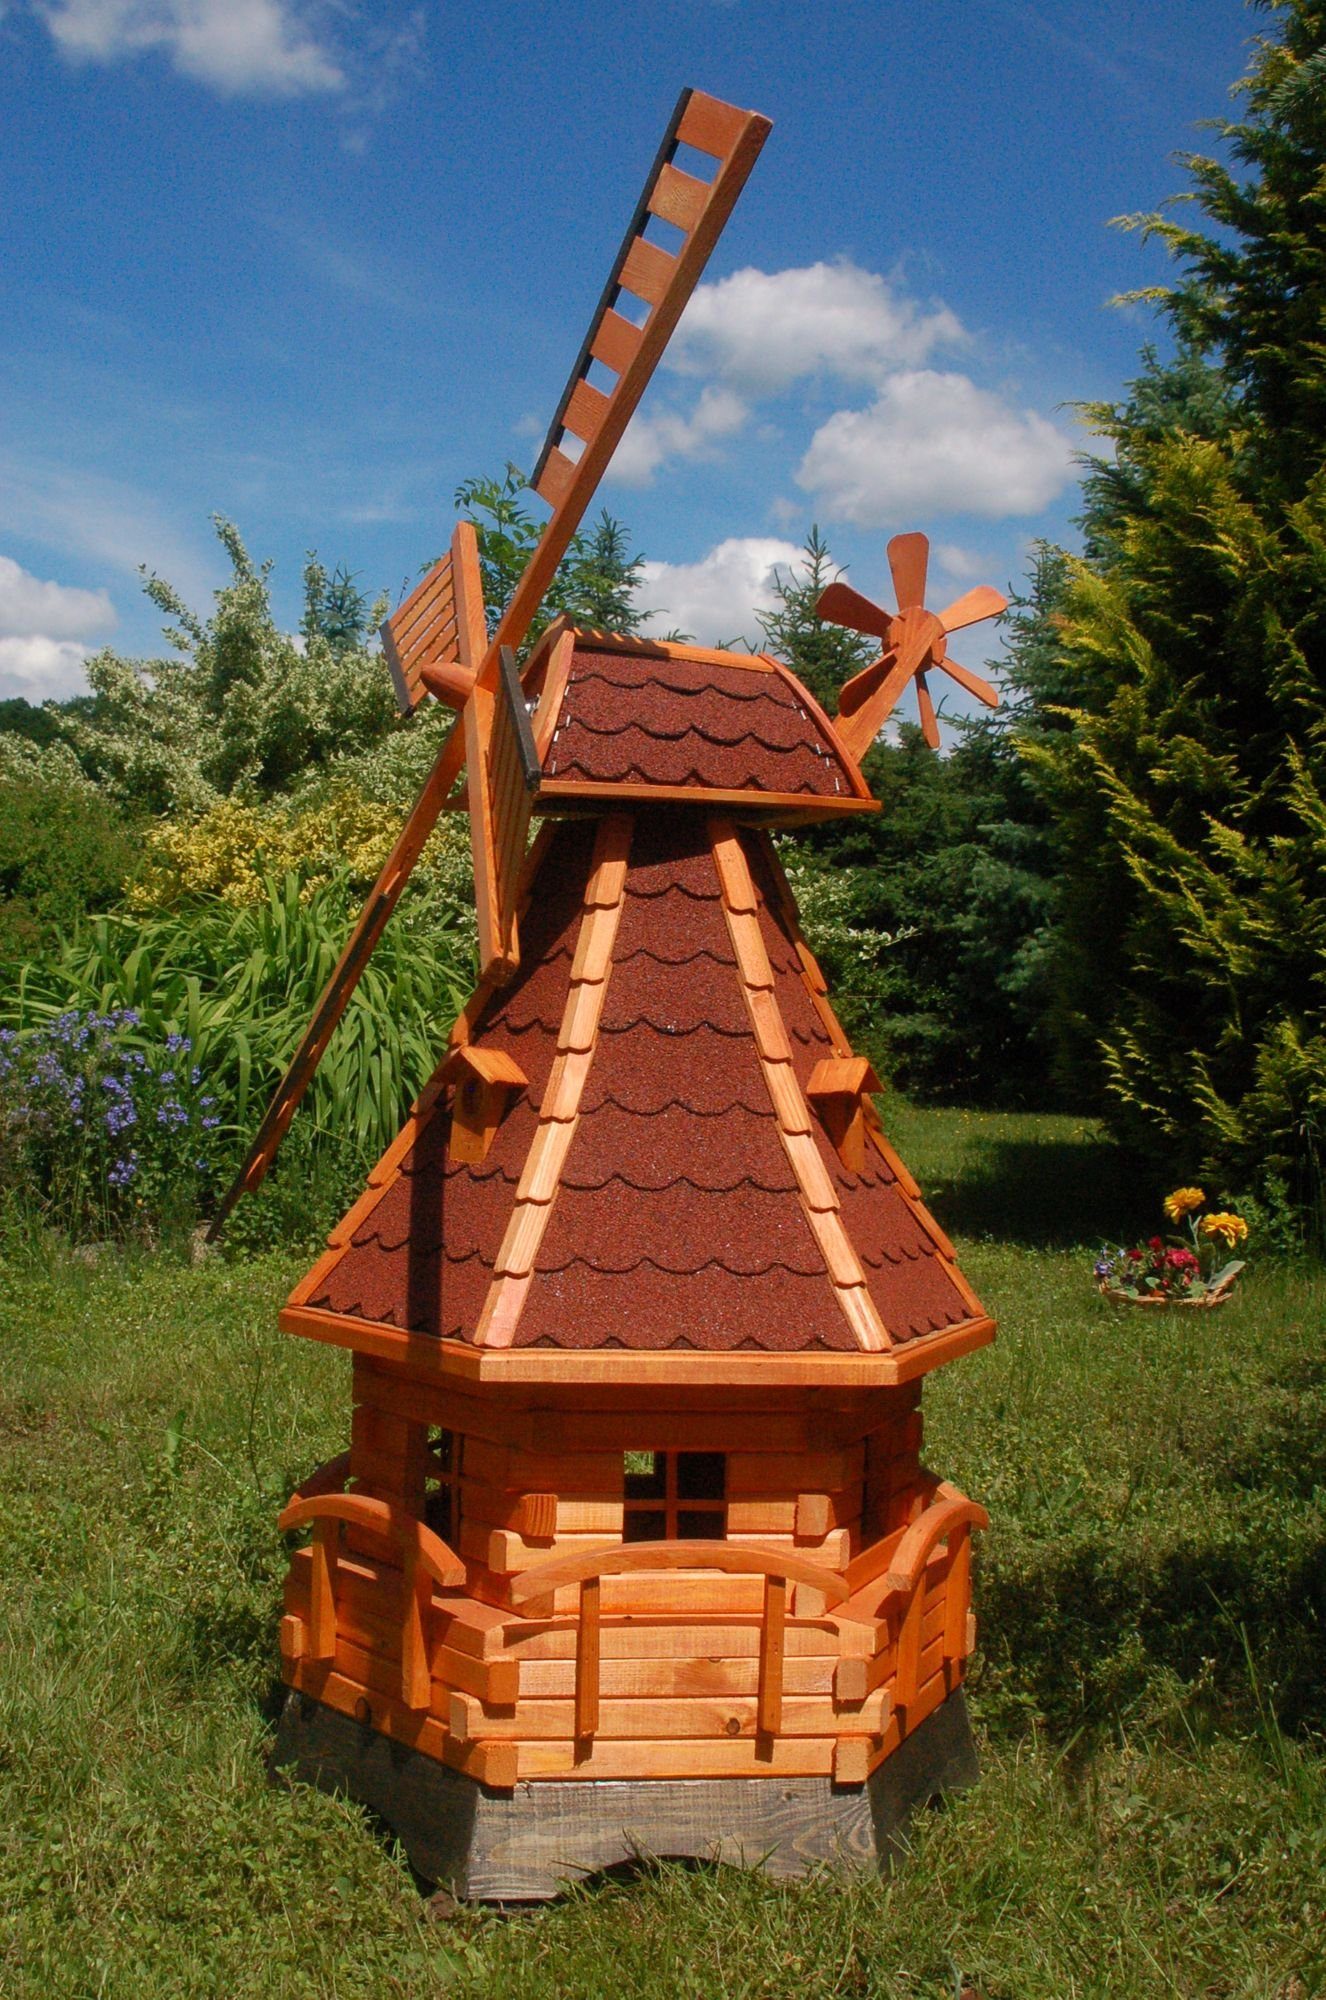 DSH DEKO SHOP HANNUSCH Gartenfigur Deko-Windmühlen aus Holz in verschiedenen Farben – Höhe 1,4 m